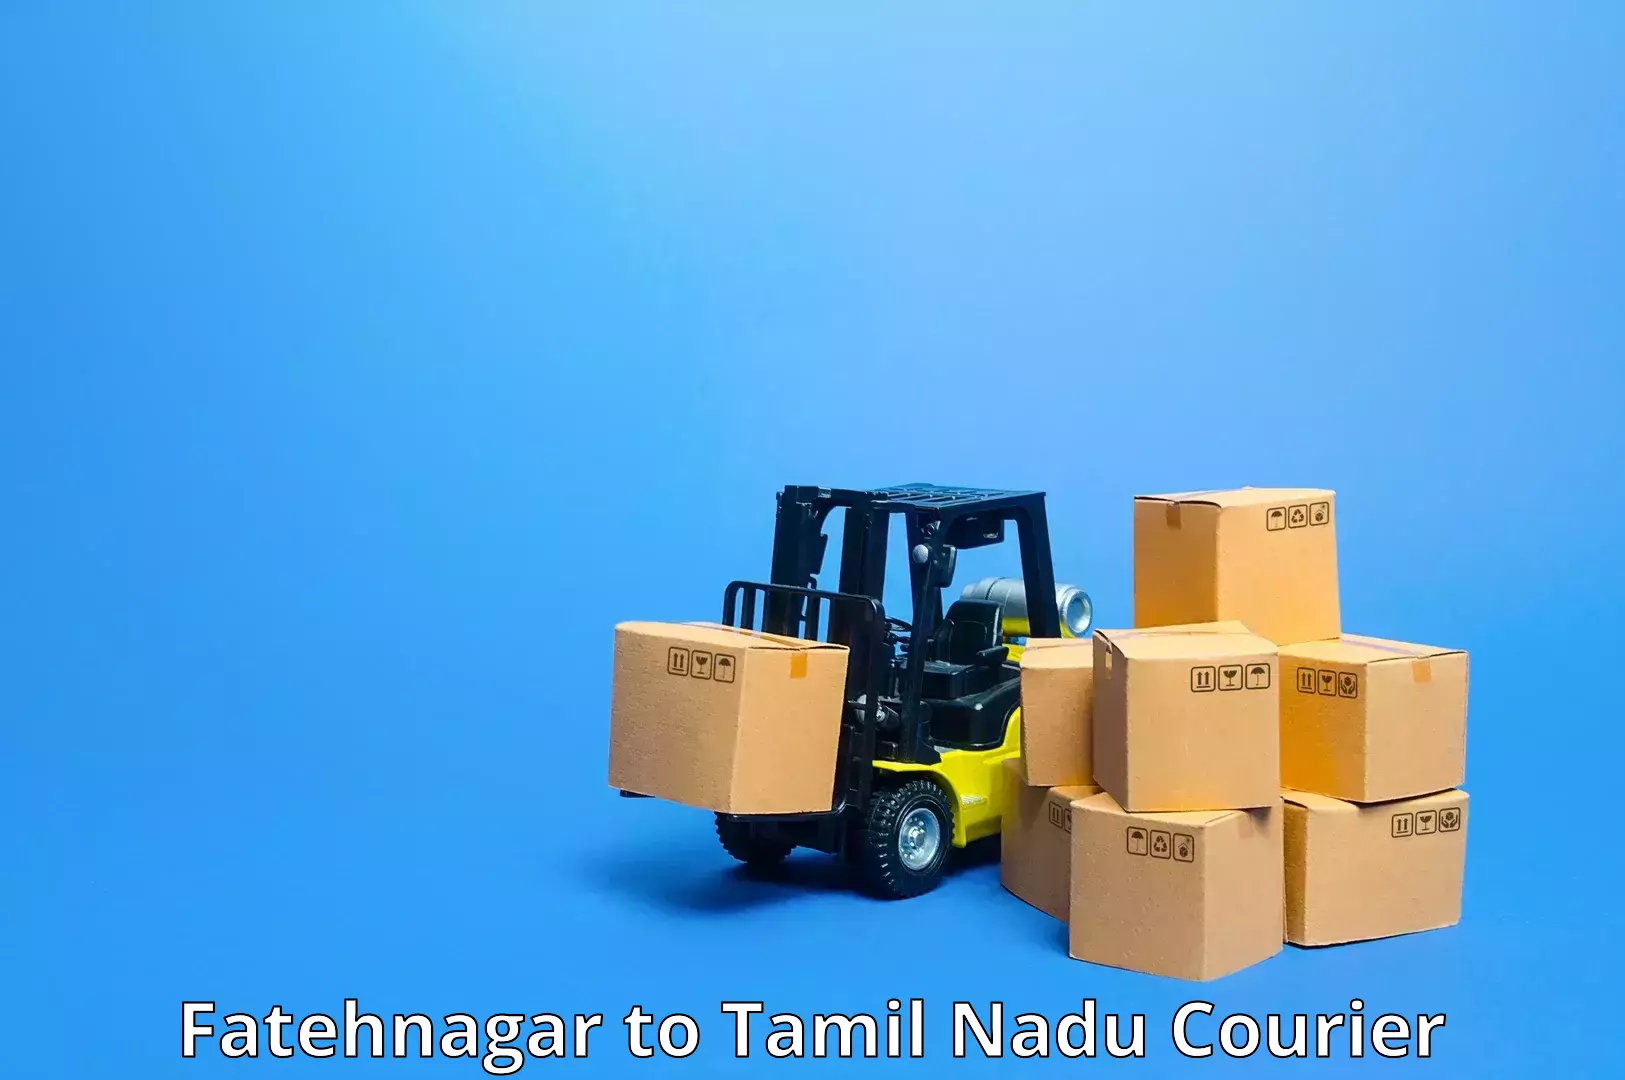 Residential courier service Fatehnagar to IIIT Tiruchirappalli